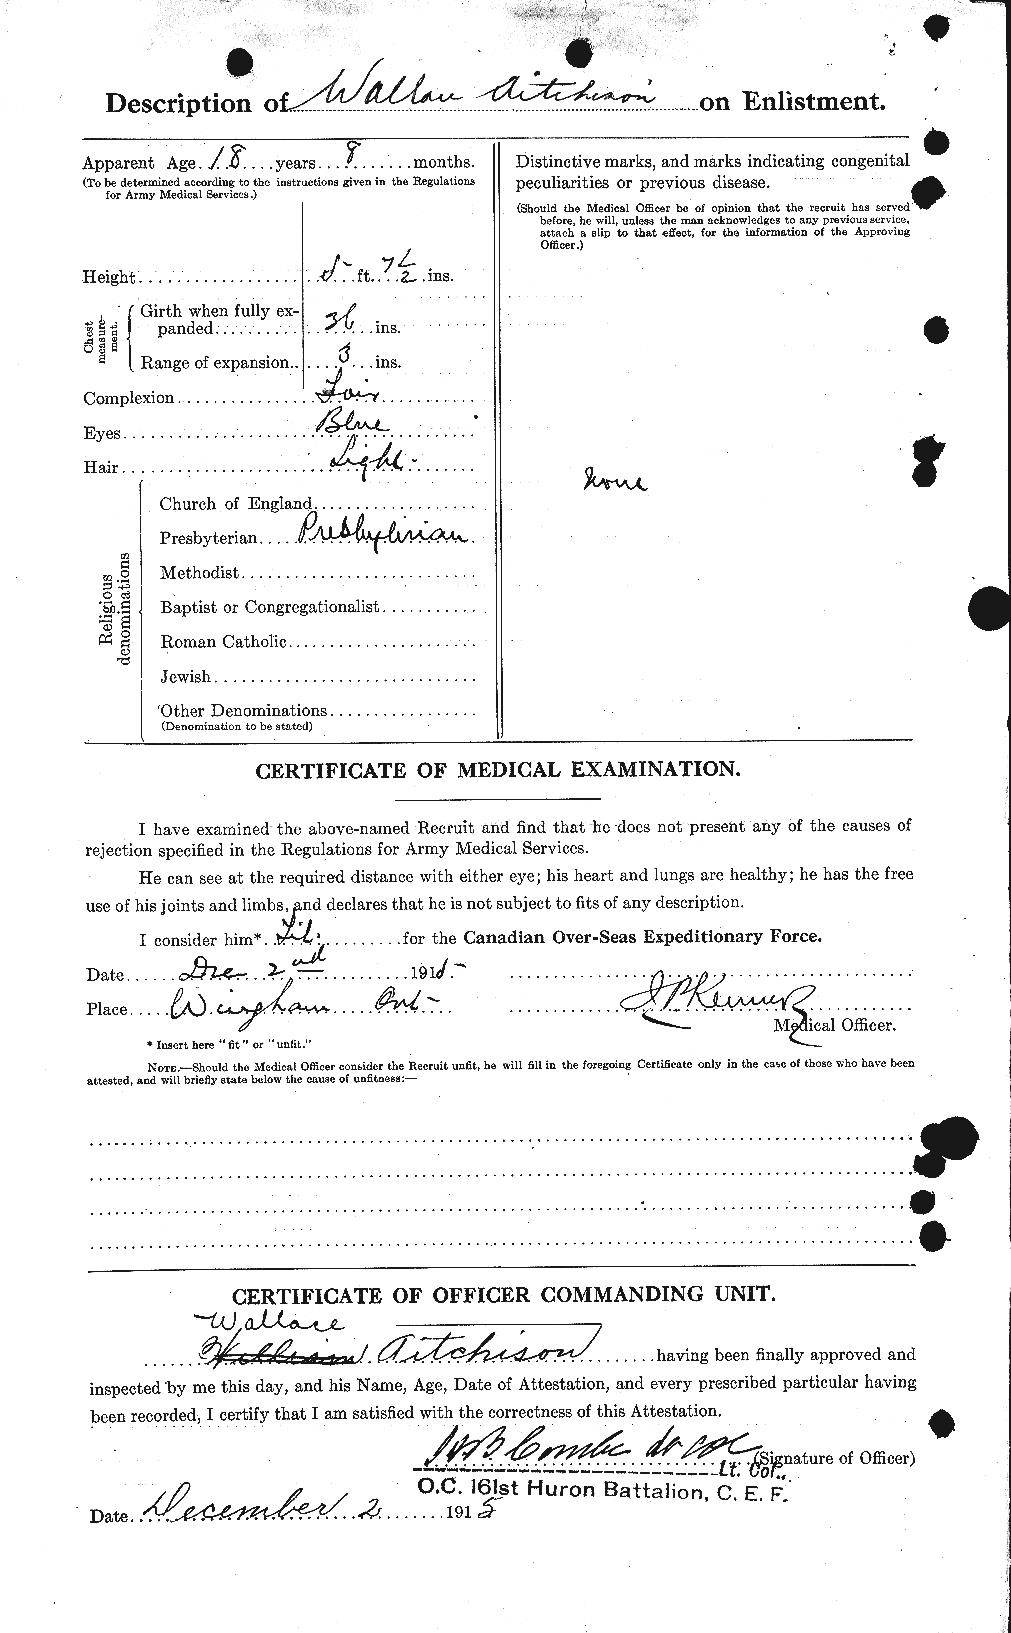 Dossiers du Personnel de la Première Guerre mondiale - CEC 203318b